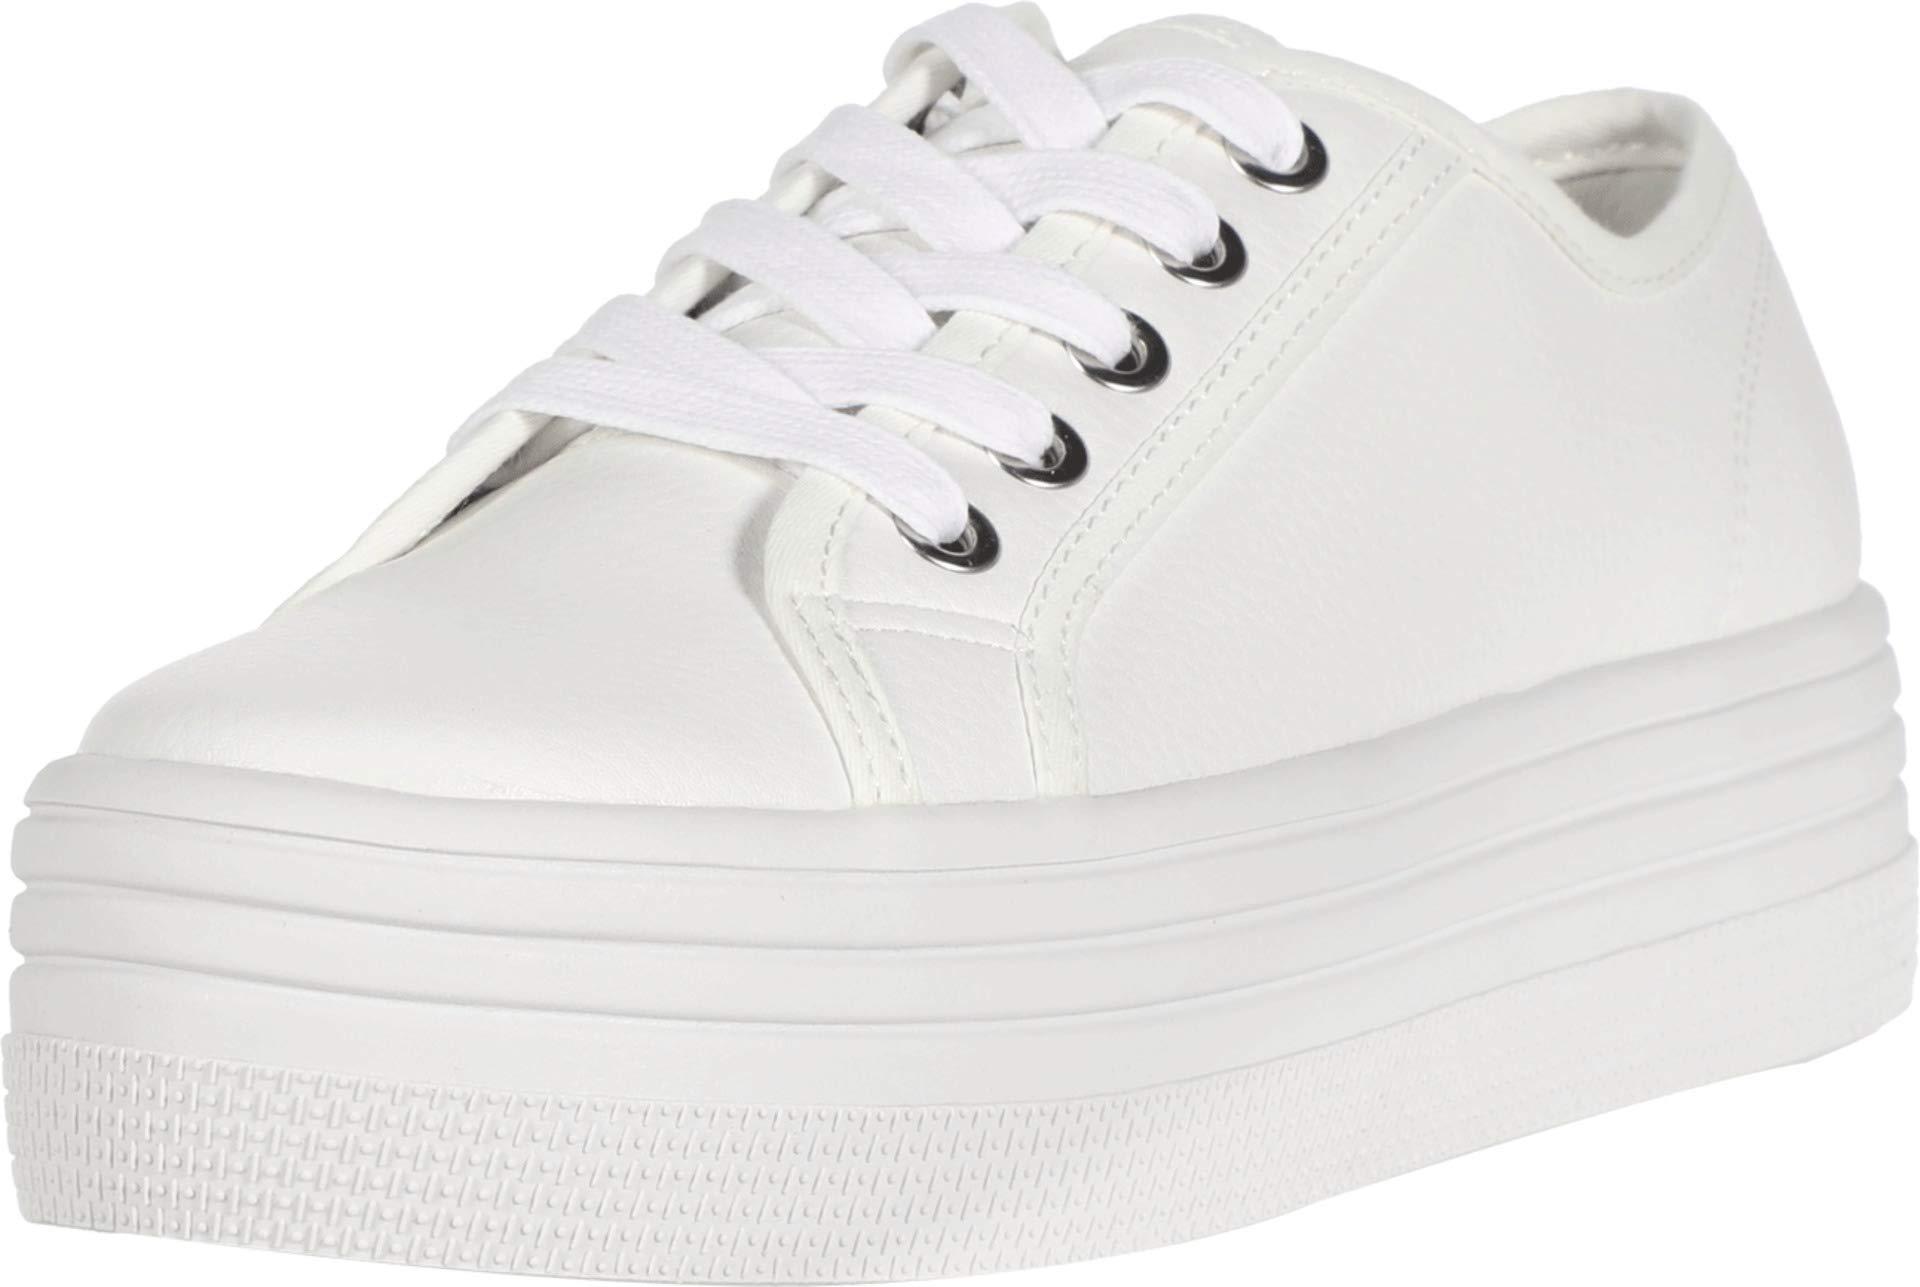 Steve Madden Leather Bobbi 30 Sneaker in White - Lyst